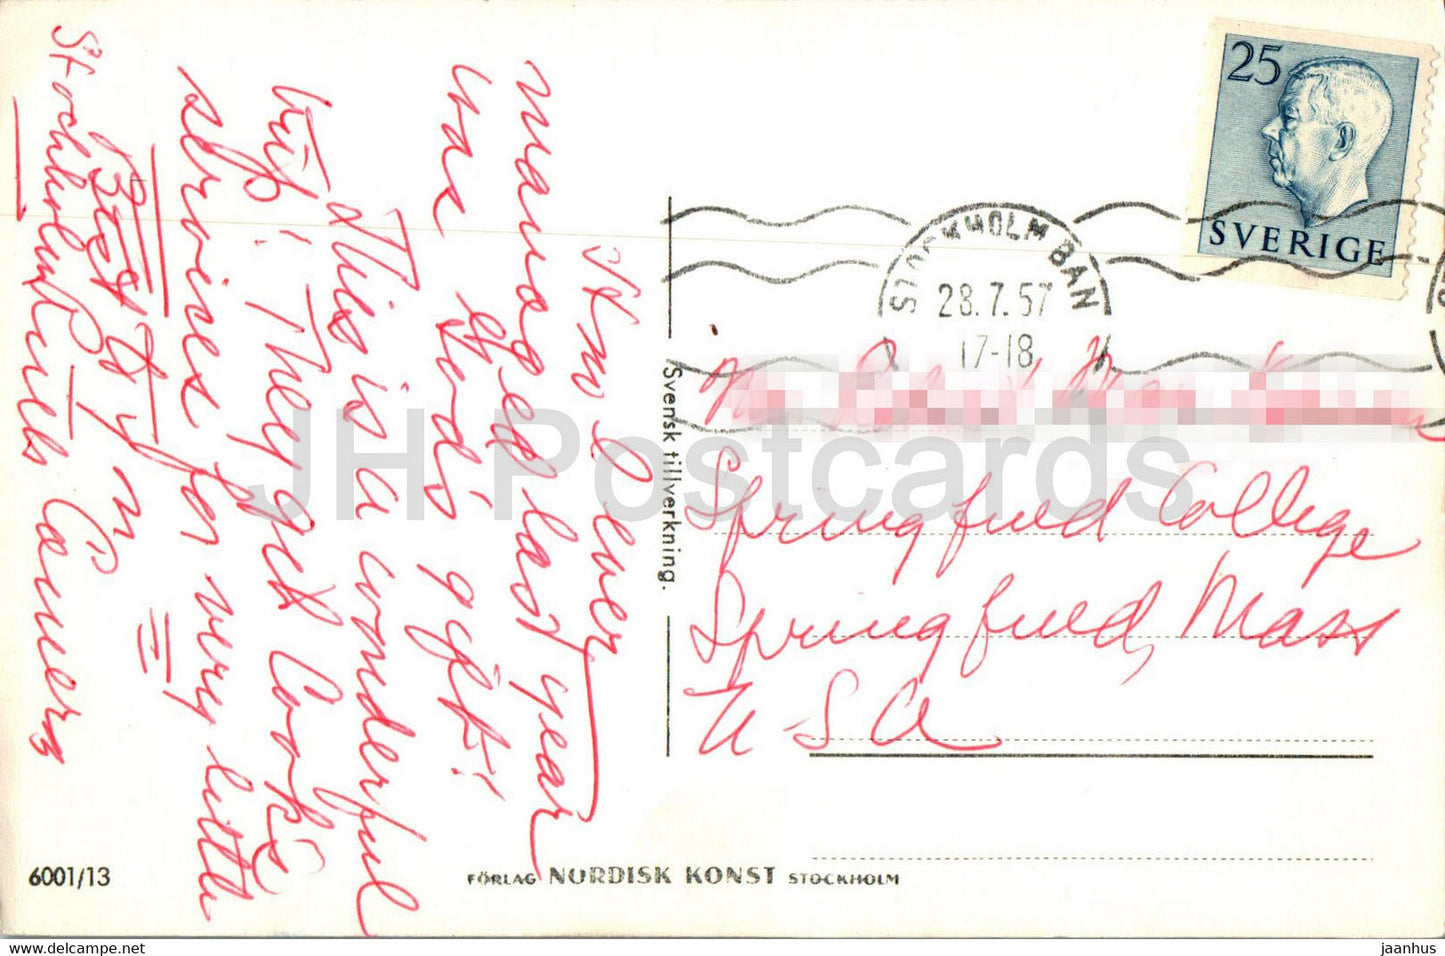 Drottning Holm - map - old postcard - 1957 - Sweden - used